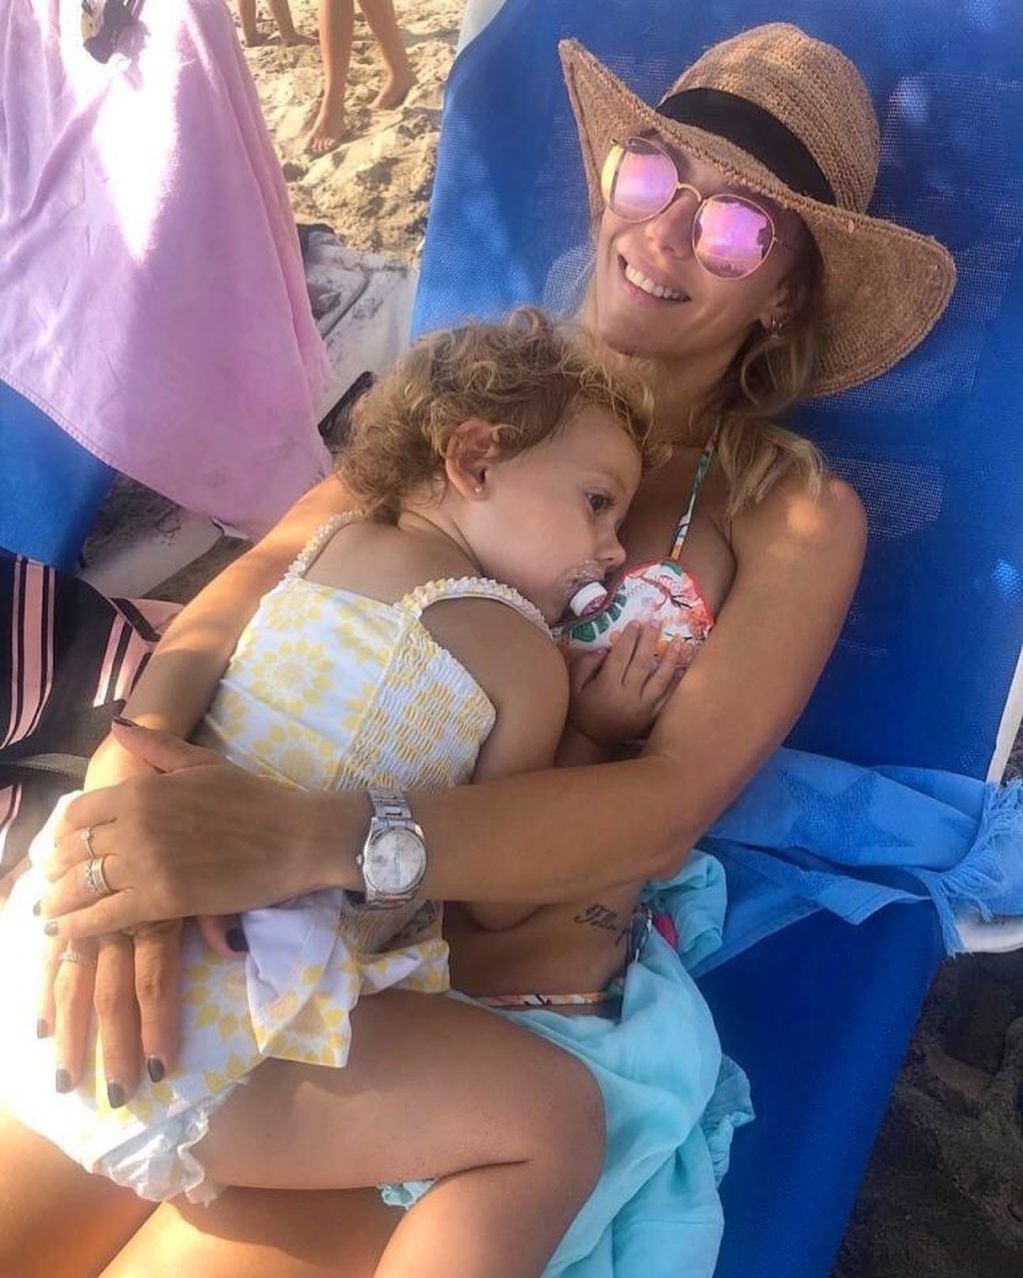 Celeste Cid y Evangelina Anderson les dicen "Abrojito" a sus hijos menores (Foto: Instagram)